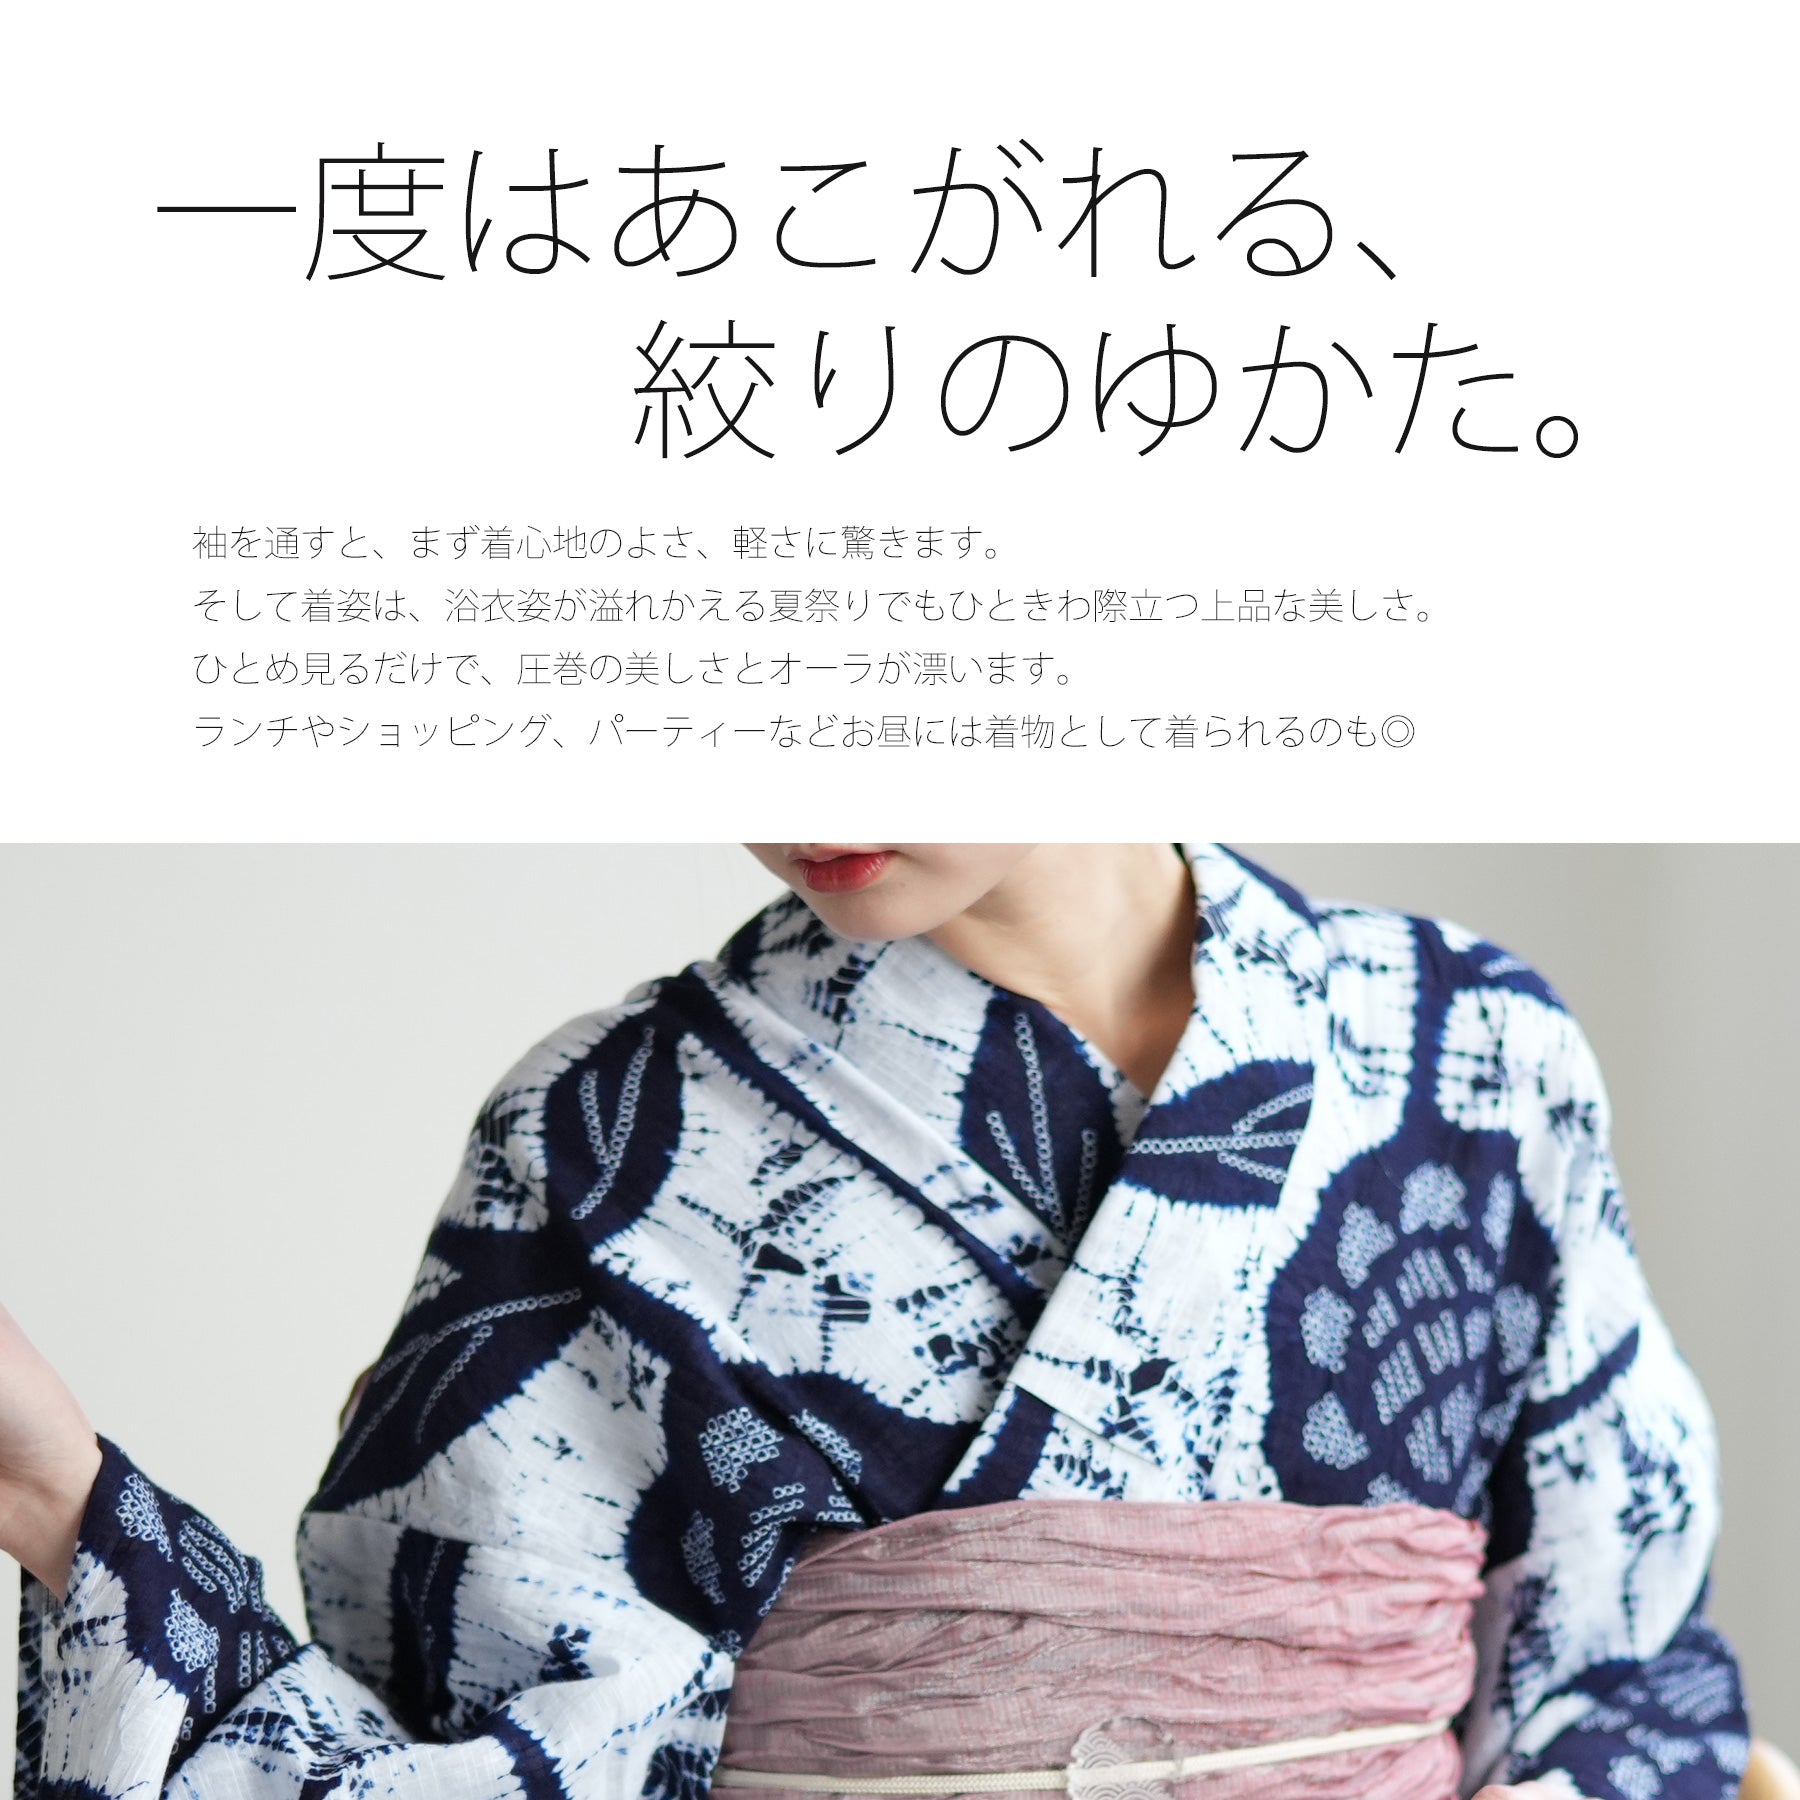 utatane 有松絞り 浴衣3点セット ( ゆかた・帯・下駄 ) 綿麻 白と濃紺 